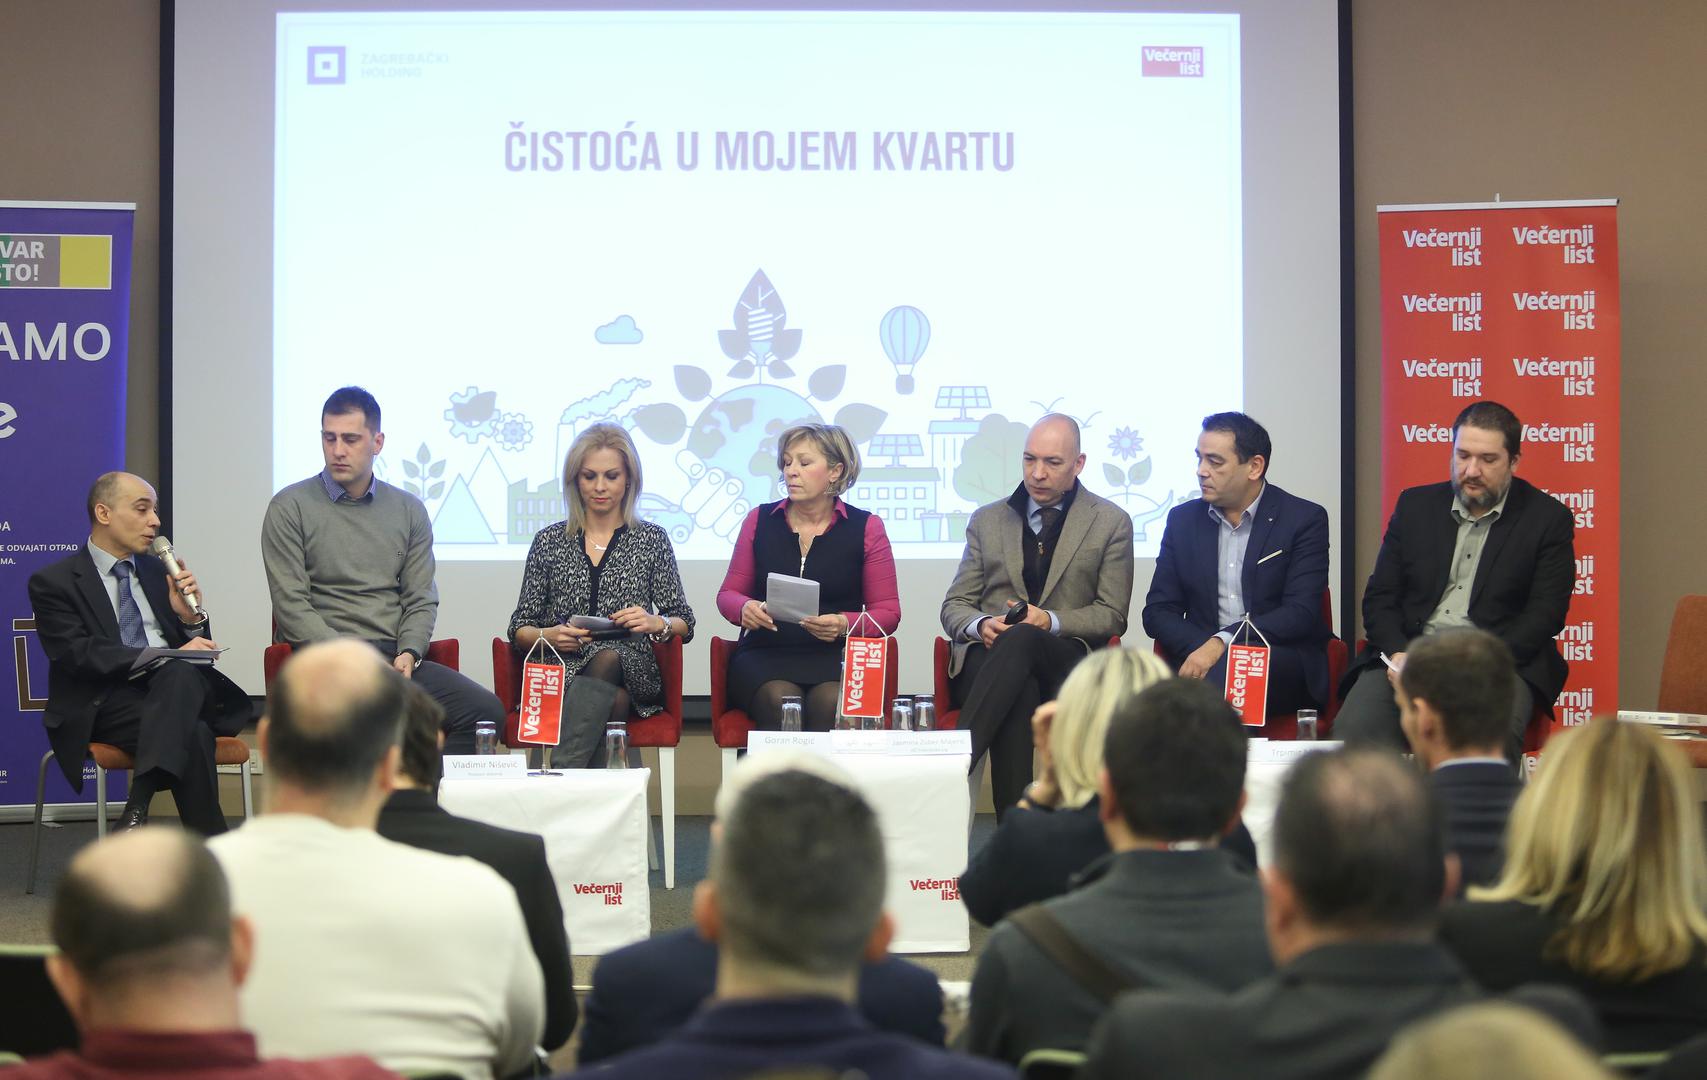 Diskusiju je moderirao Vladimir Nišević, a sudjelovali su Goran Rogić, Jasmina Zuber Majerić, Marina Pucević, Igor Zgomba, Trpimir Majcan i Stanko Gačić